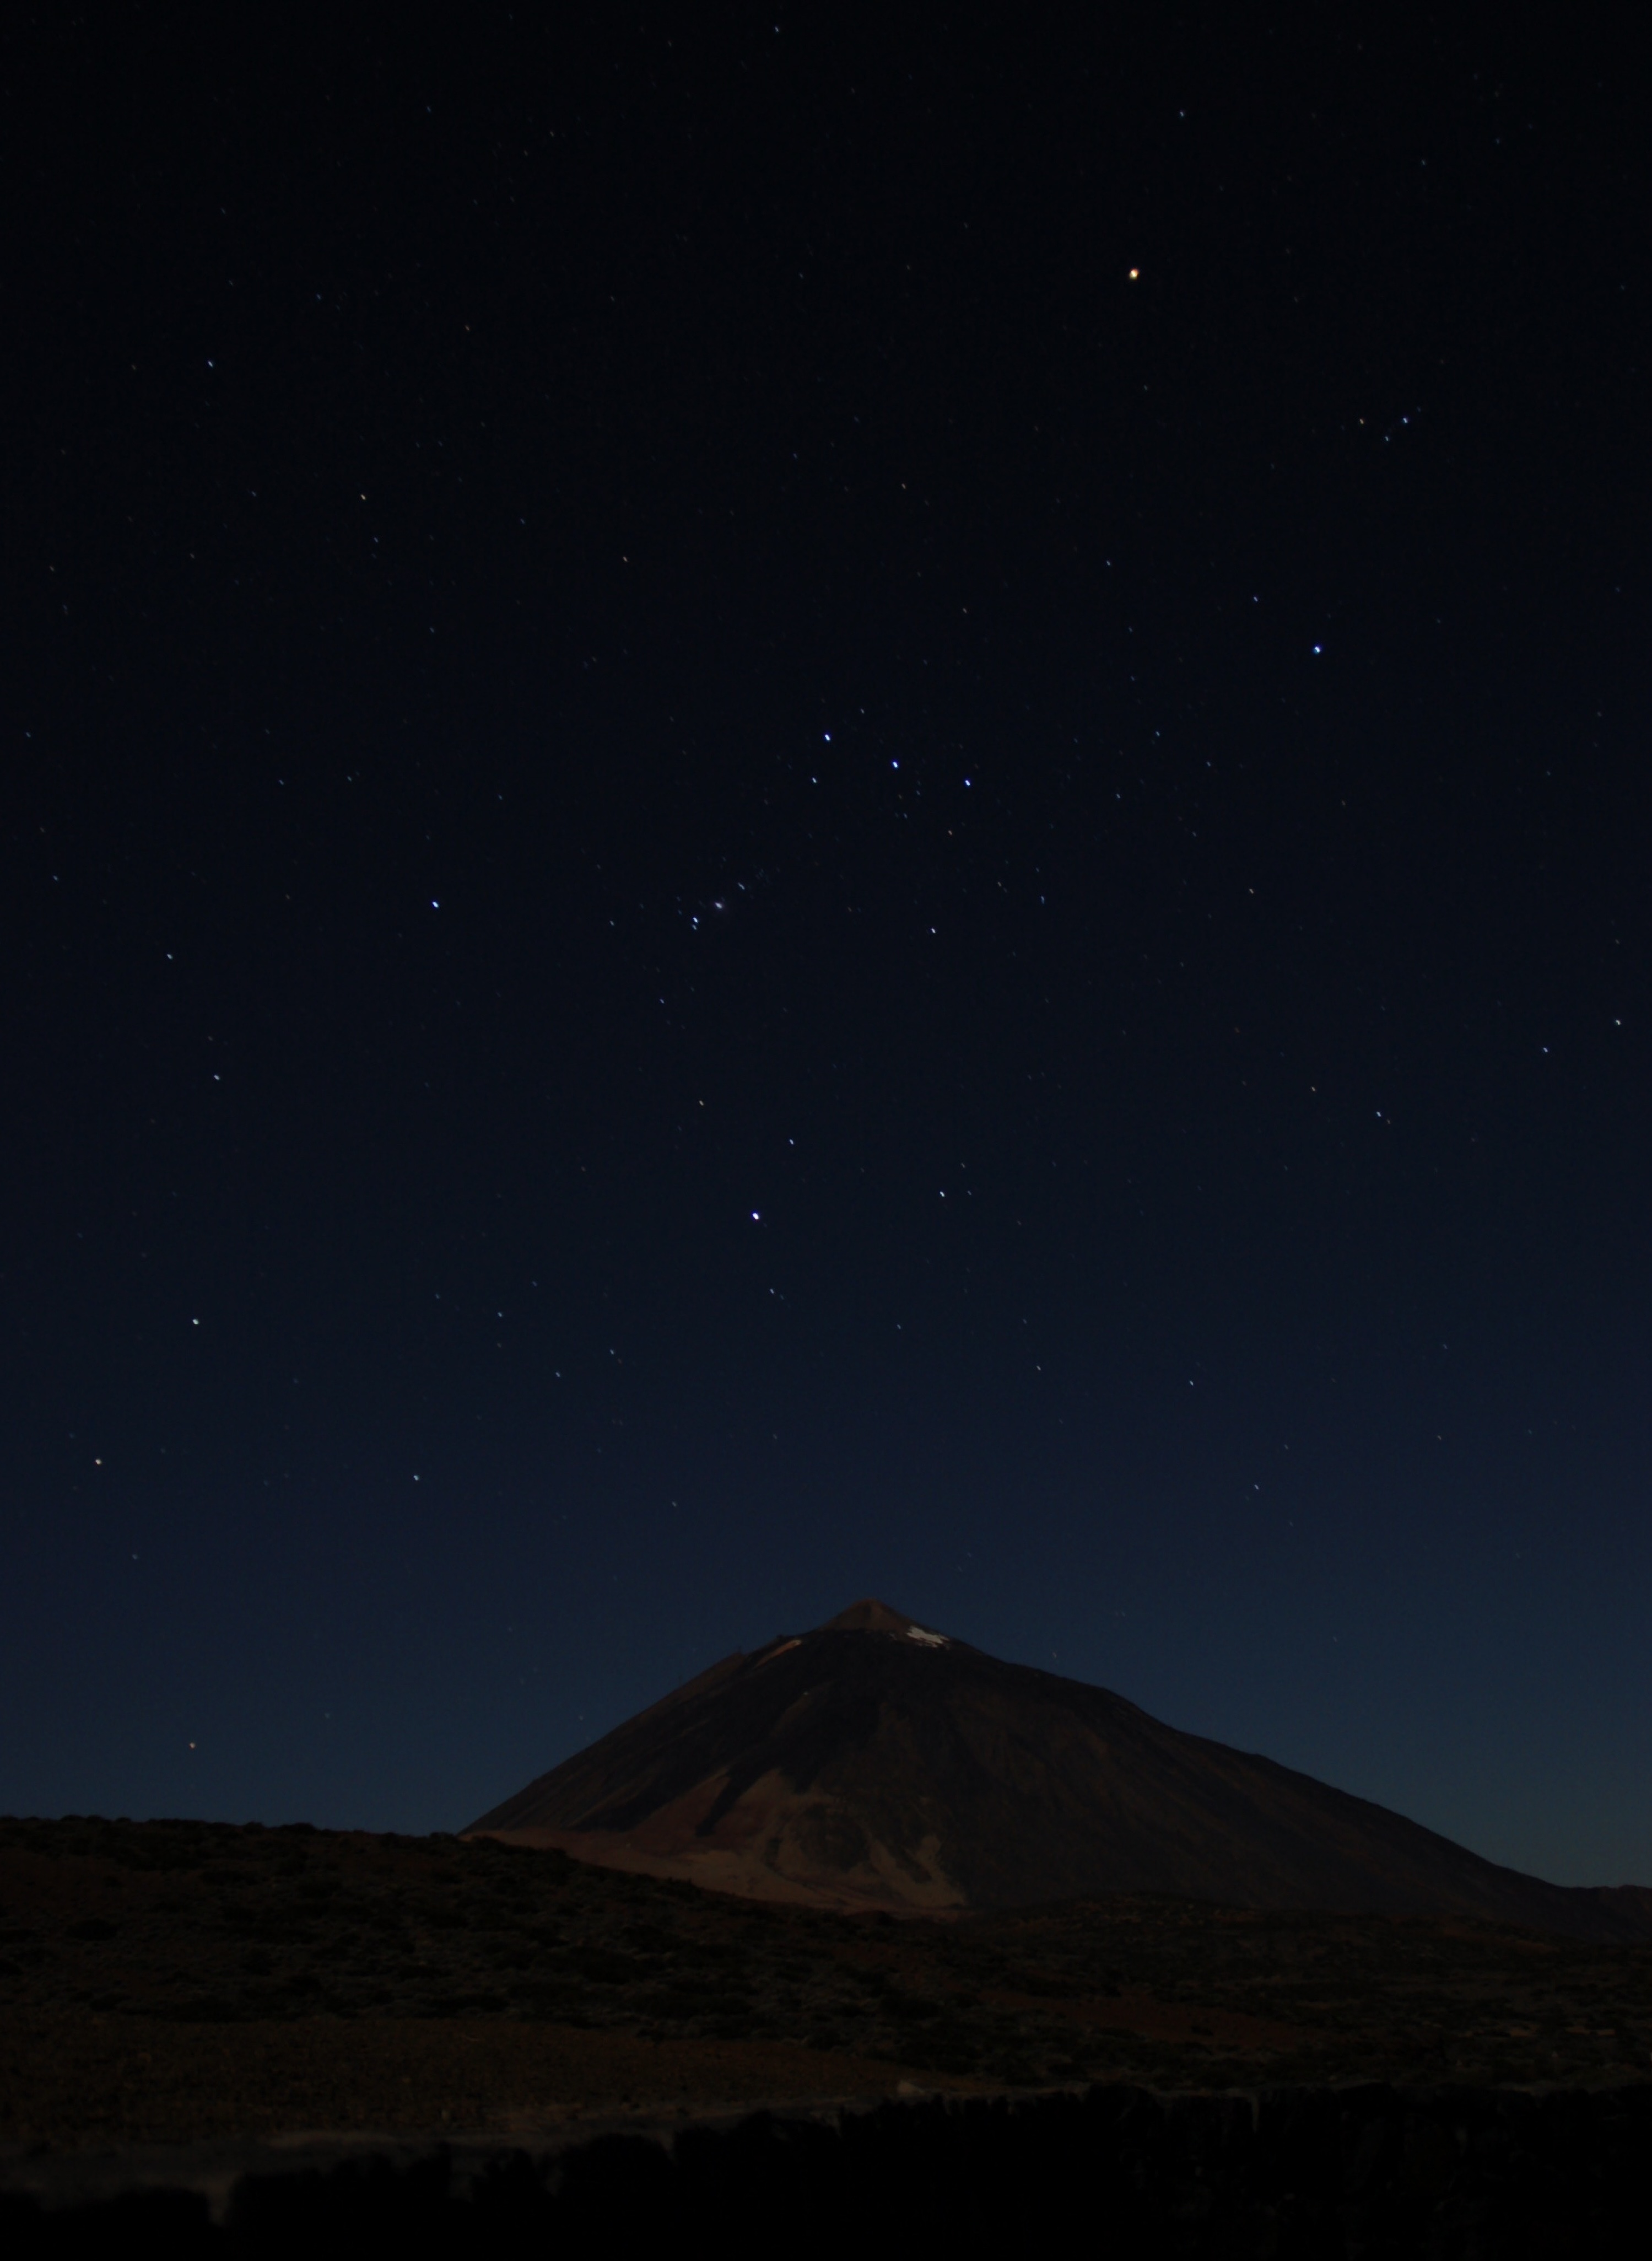 Teide nevű vulkán Tenerifén, éjszaka